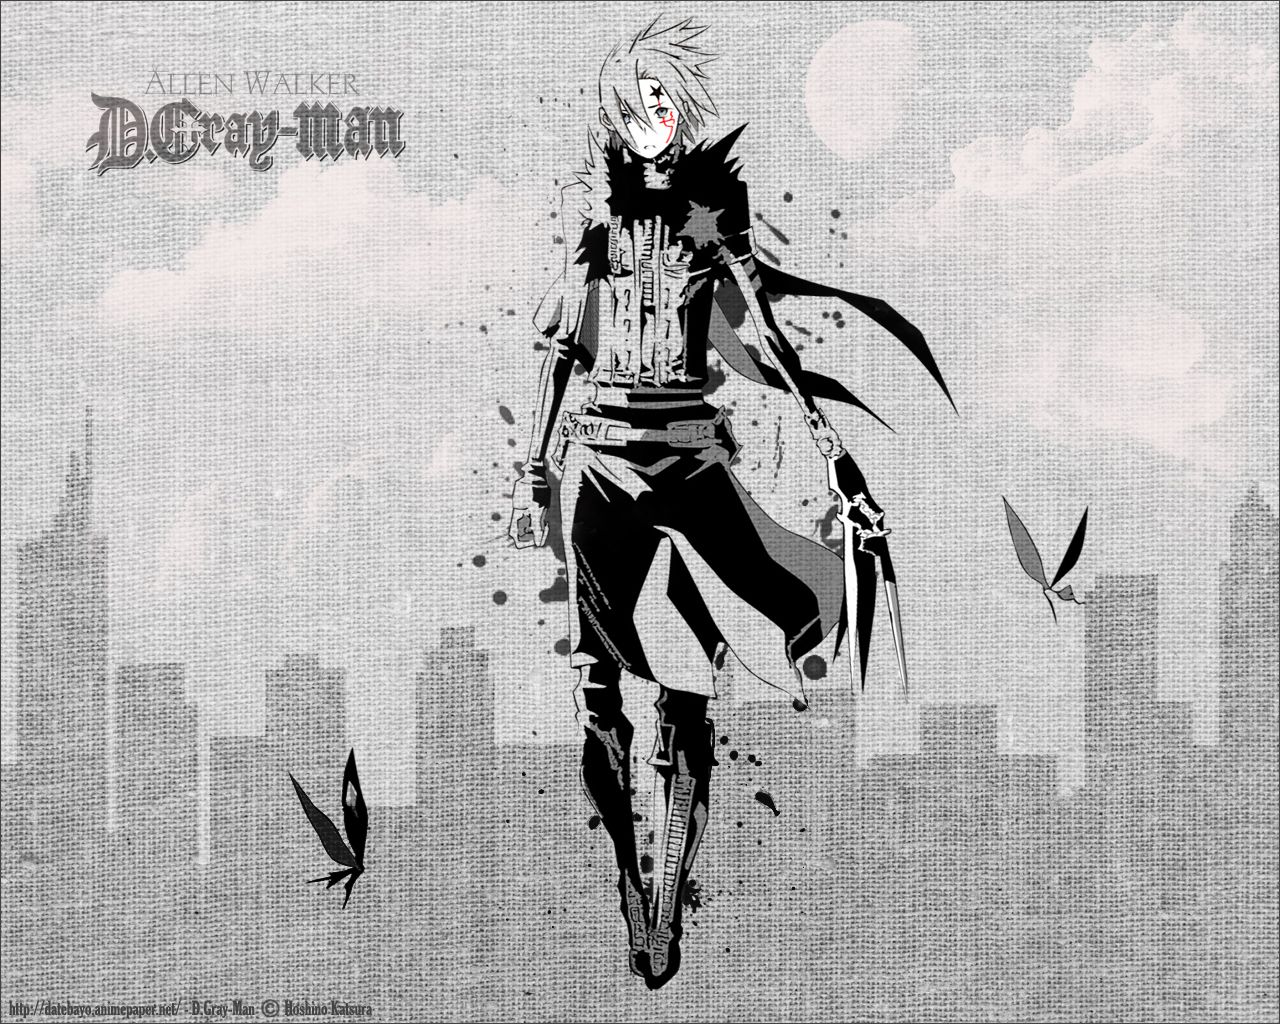 D Gray Man - D.Gray-Man Wallpaper (25478200) - Fanpop